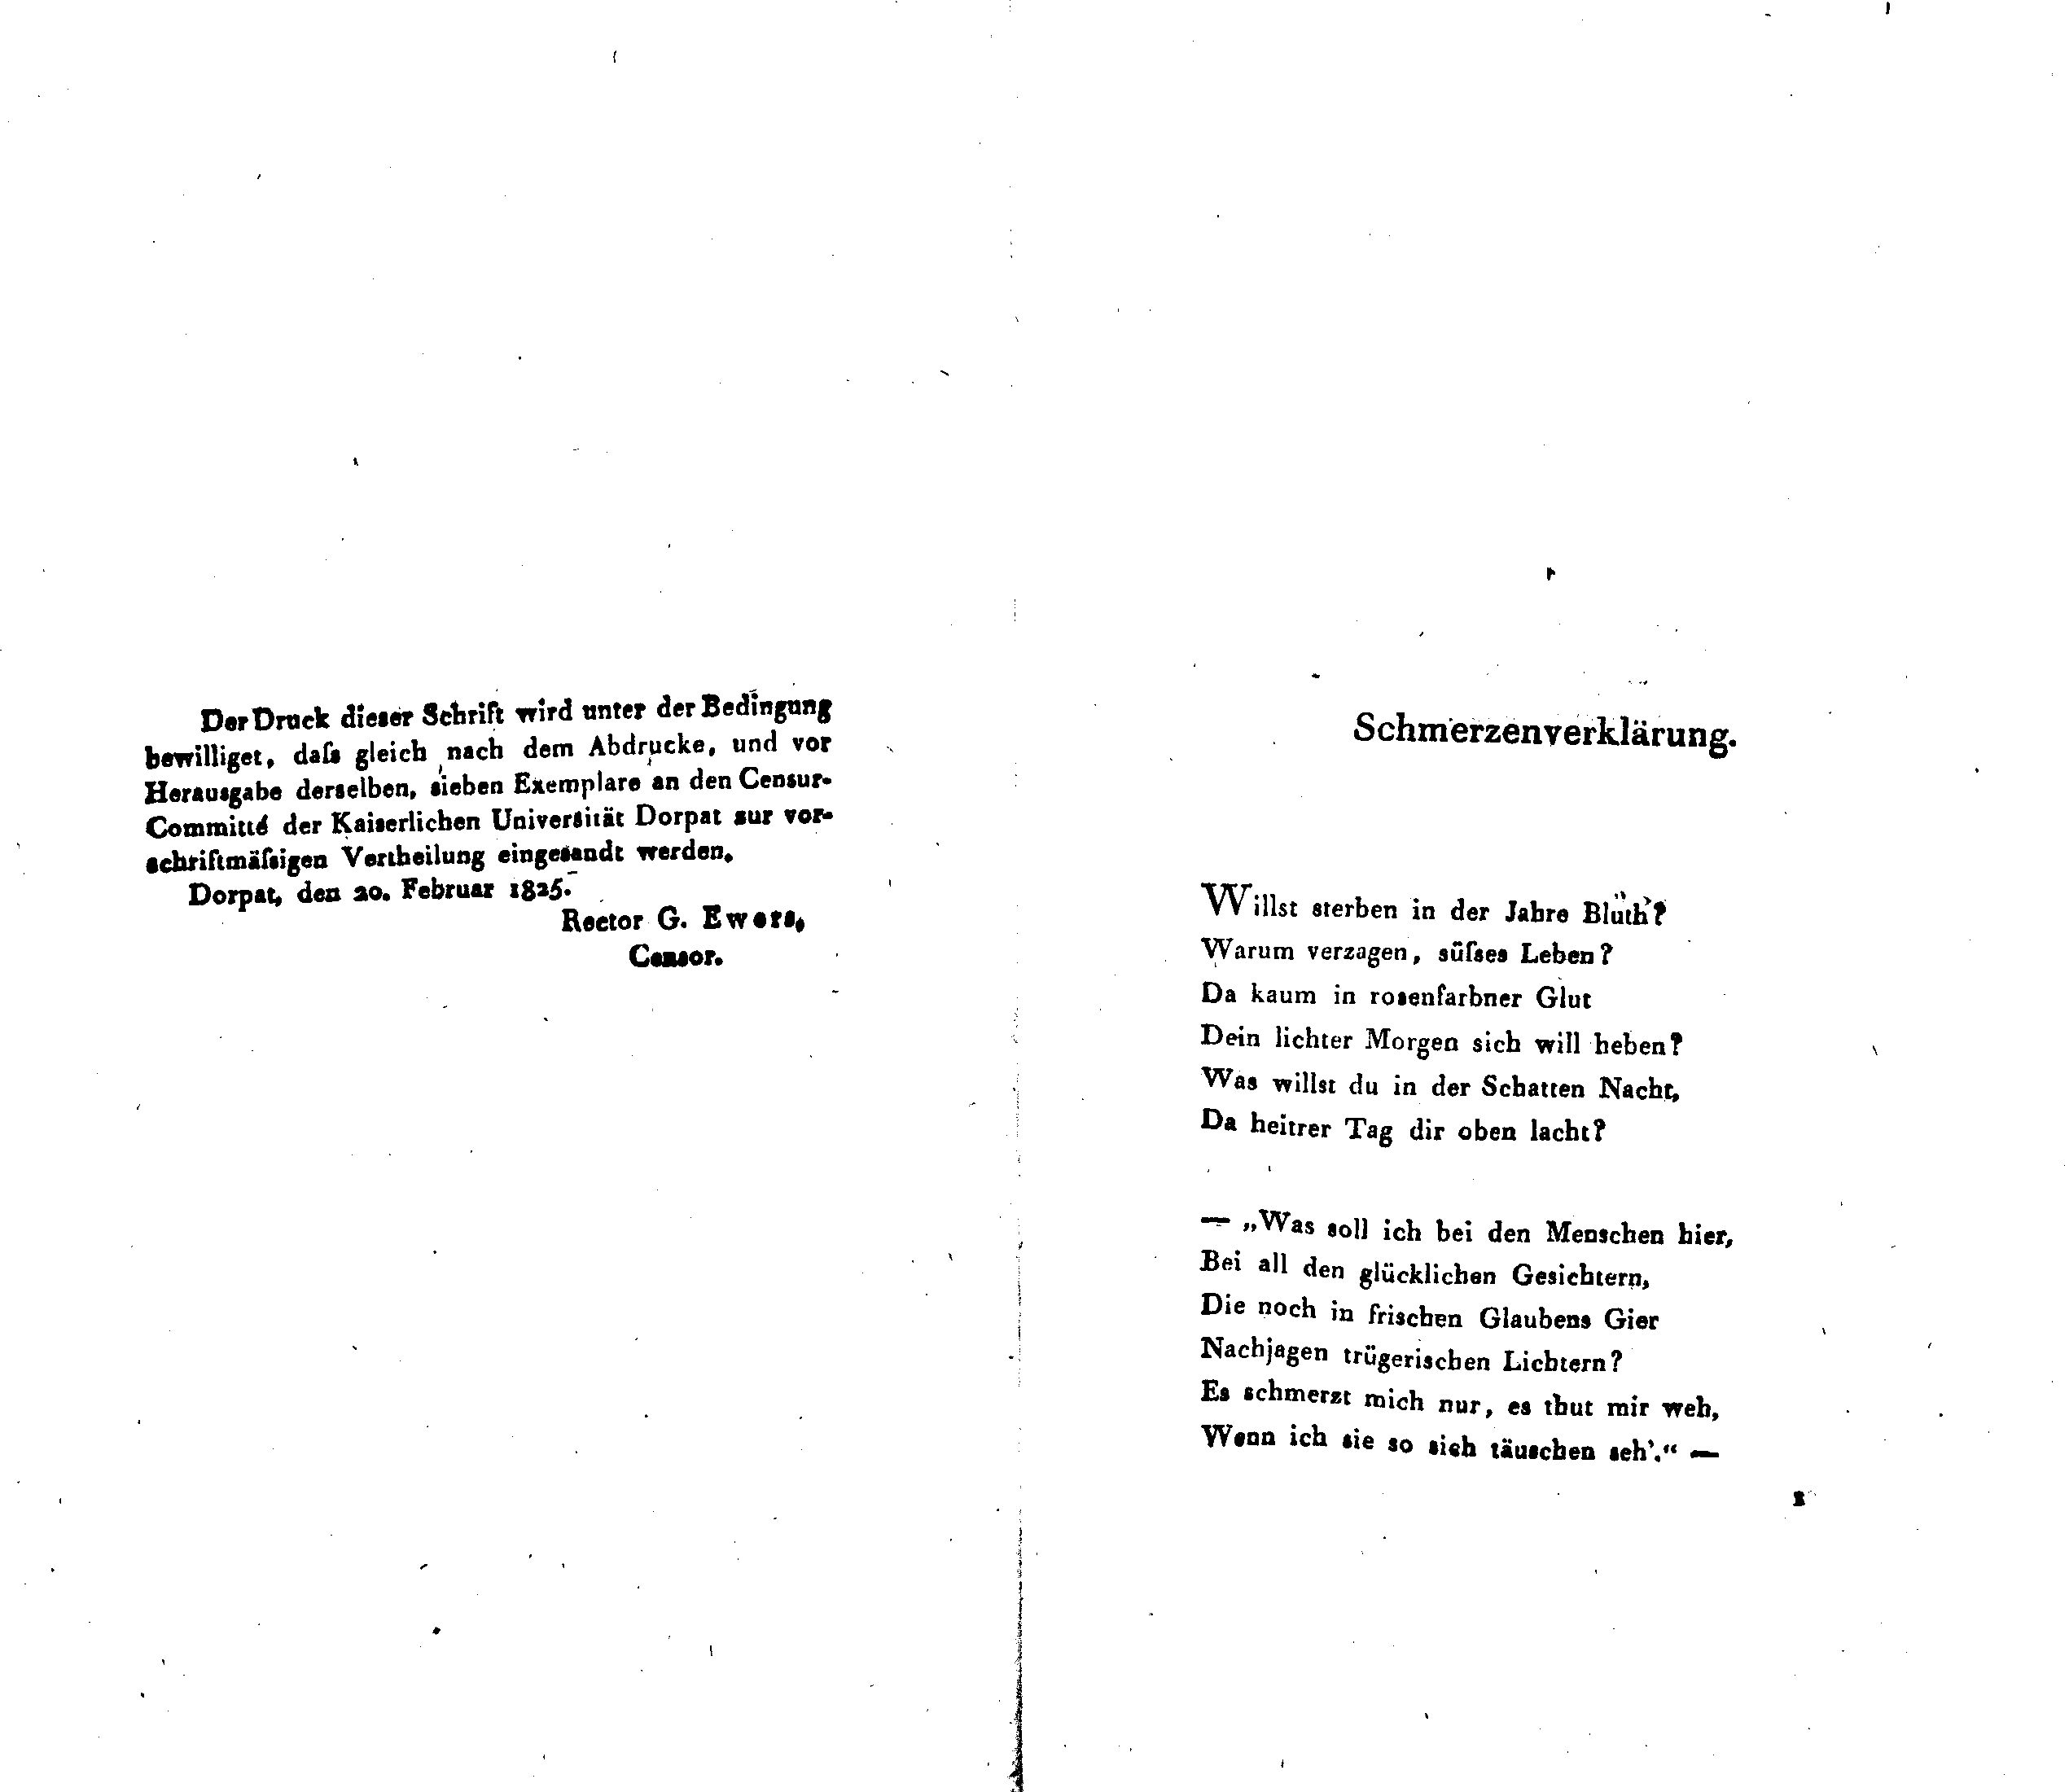 Schmerzenverklärung (1825) | 1. (1) Main body of text